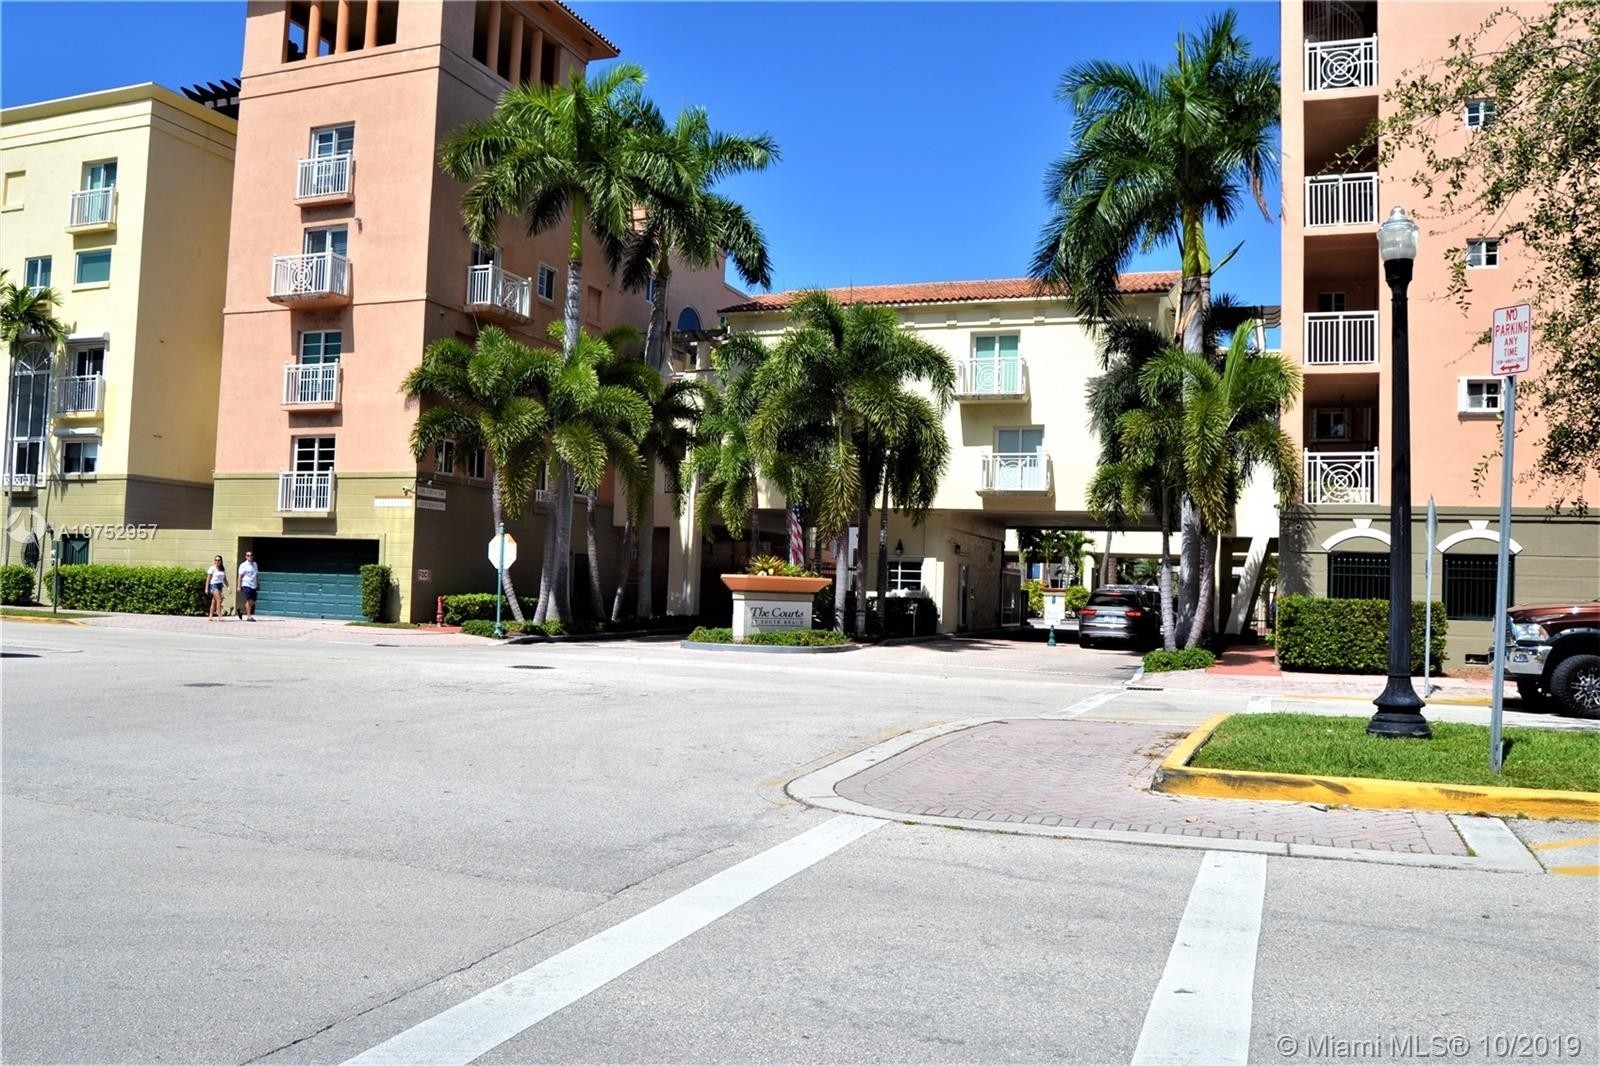 36. Condominiums at 145 Jefferson Ave , 421 Miami Beach